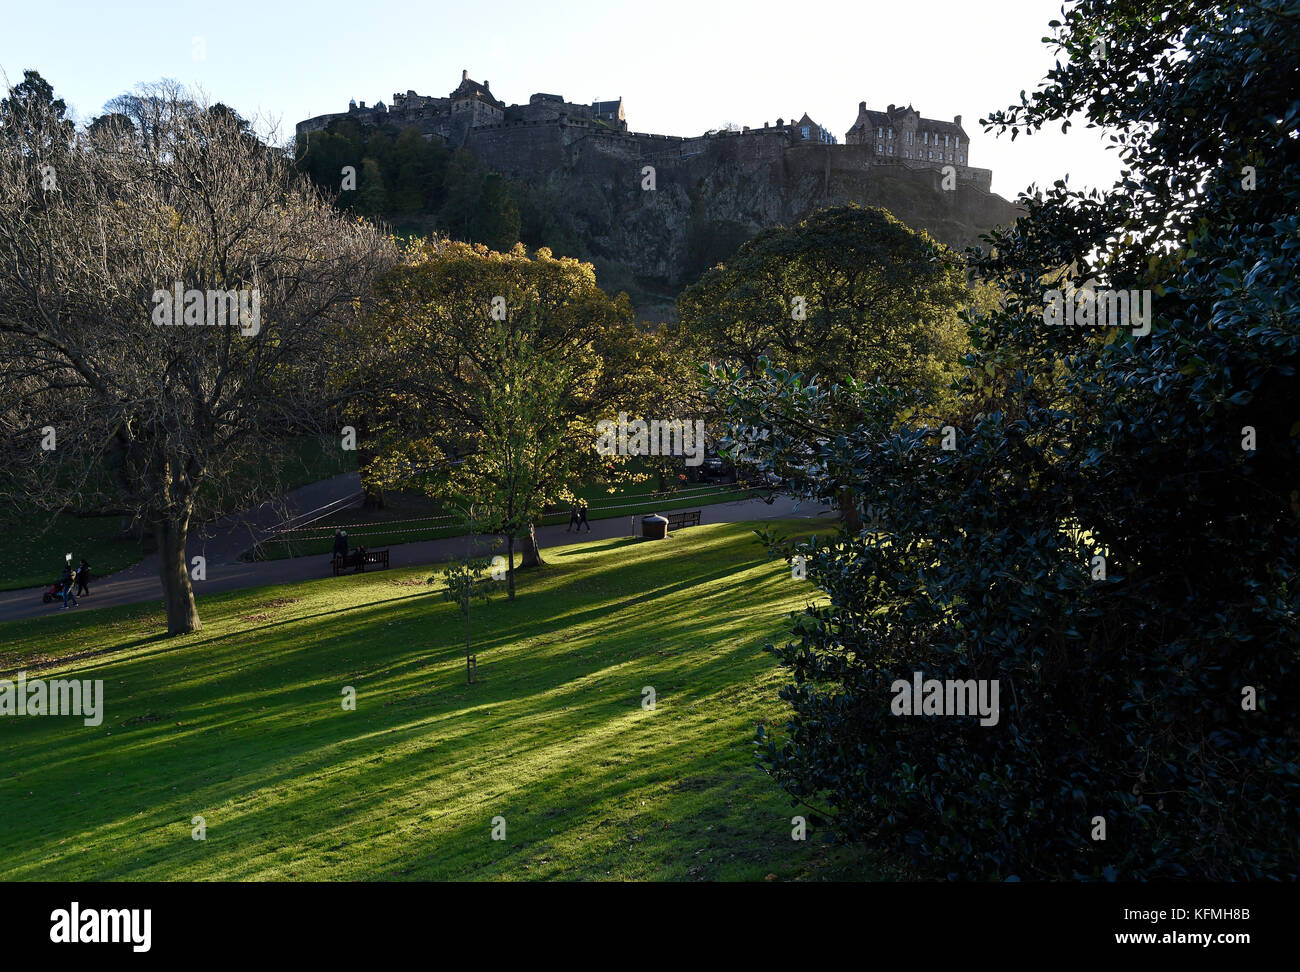 La luce solare bassa getta ombre attraverso gli alberi nei giardini di Princes street, con il Castello di Edimburgo stagliano in background. Foto Stock